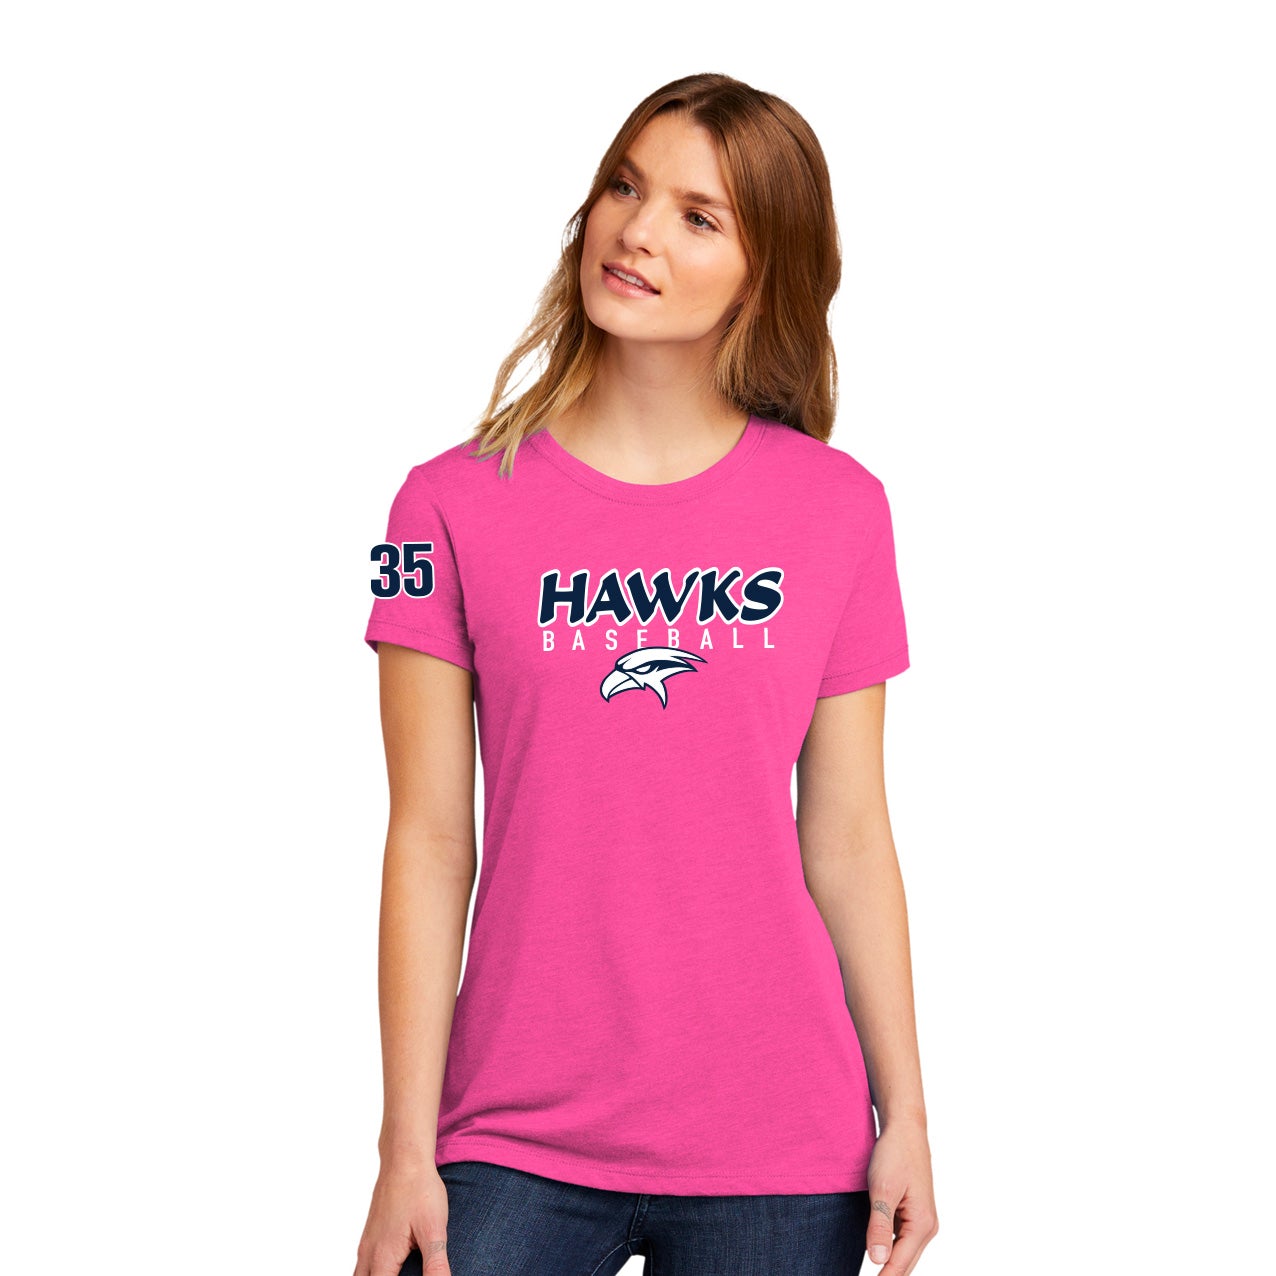 Hawks Baseball Women's Cotton Tee